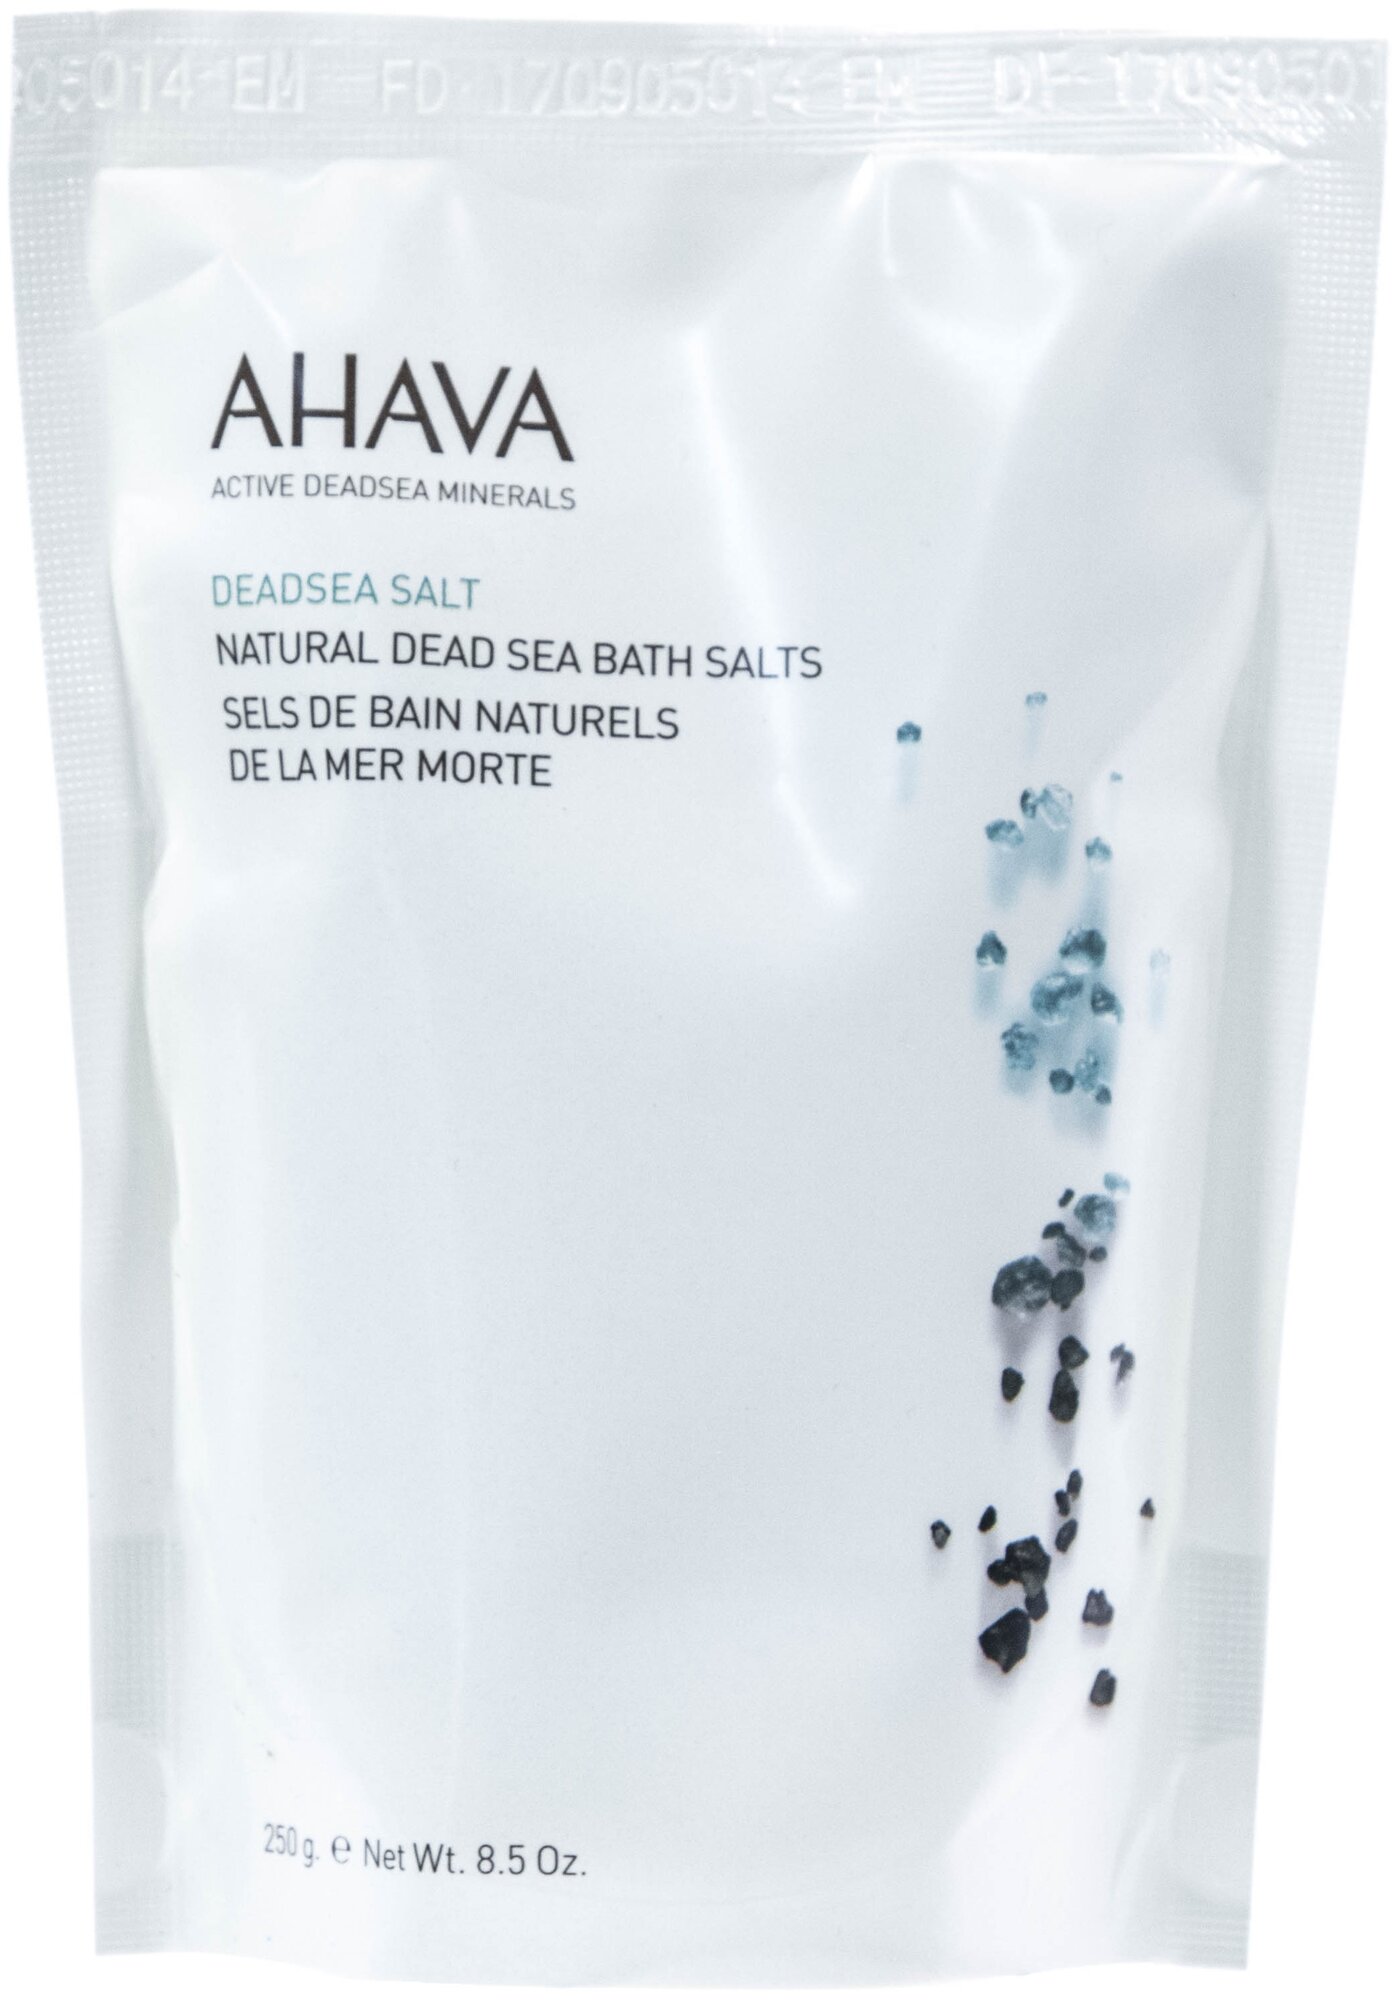 Ahava Deadsea Salt Натуральная соль мертвого моря для ванны, 250 гр